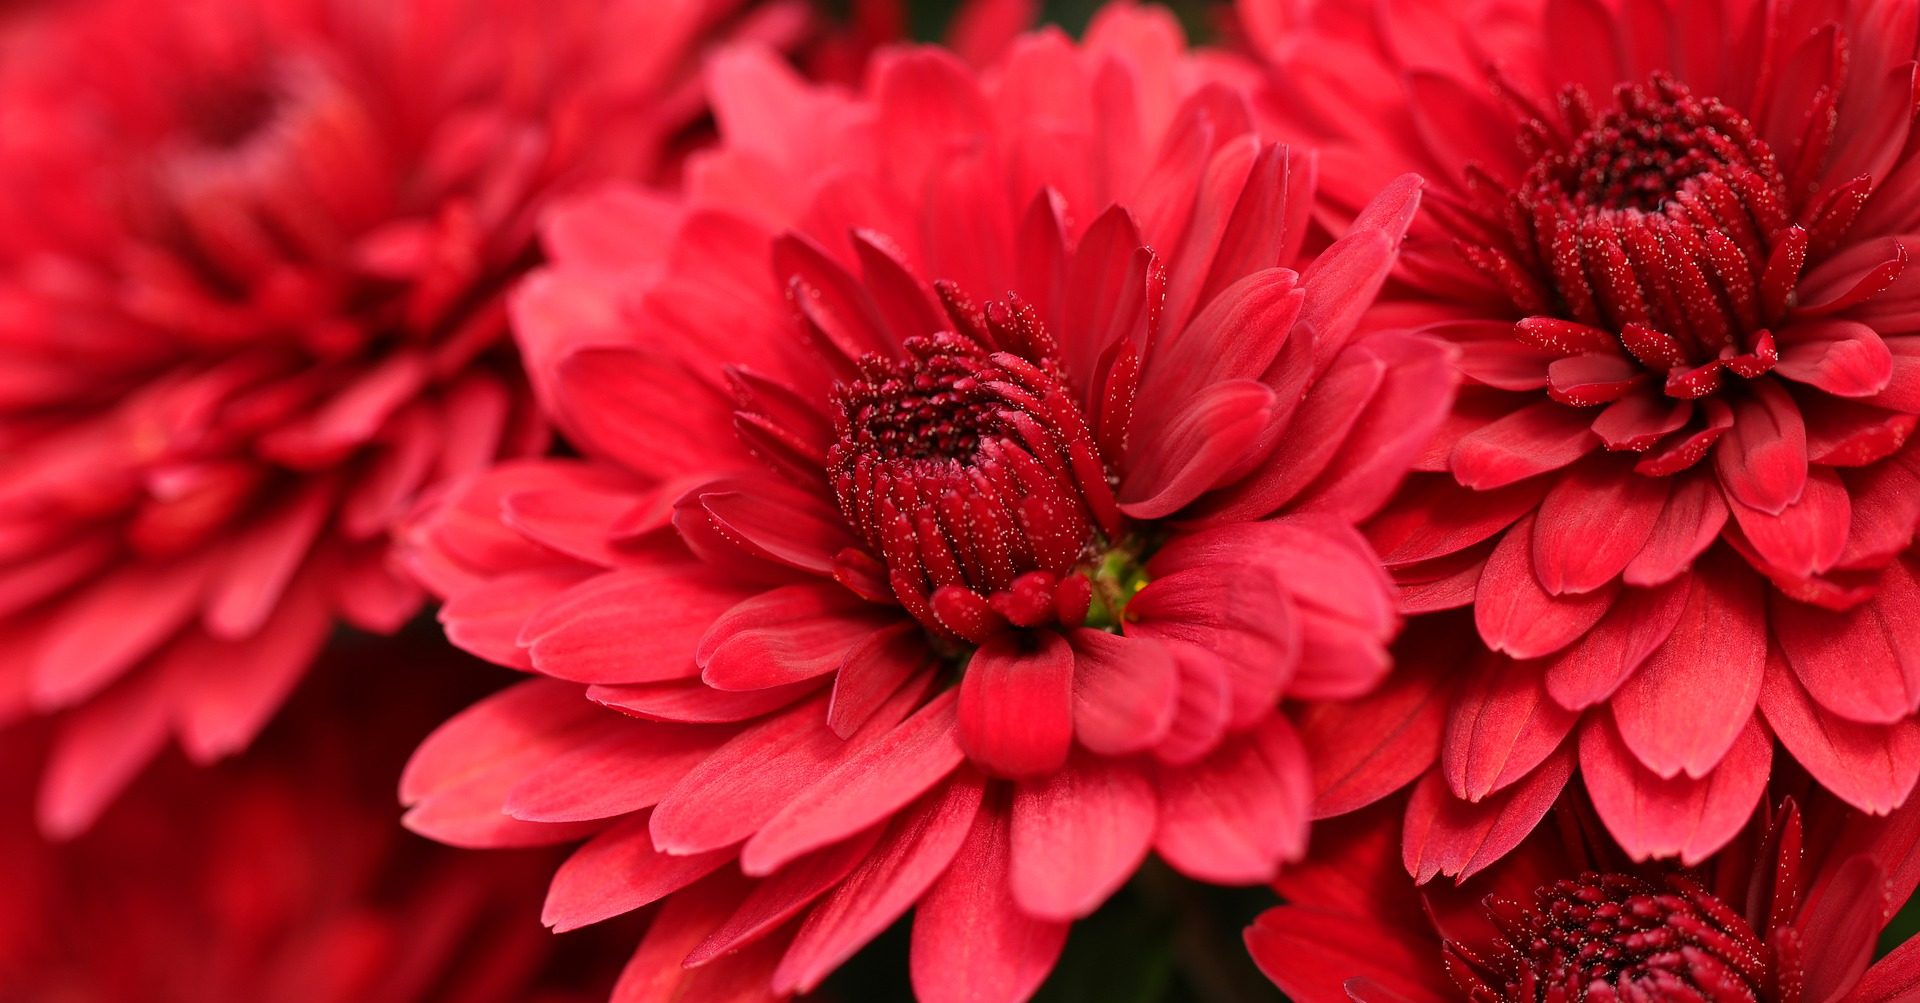 Выставку осенних цветов откроют в Биомузее. Фото: pixabay